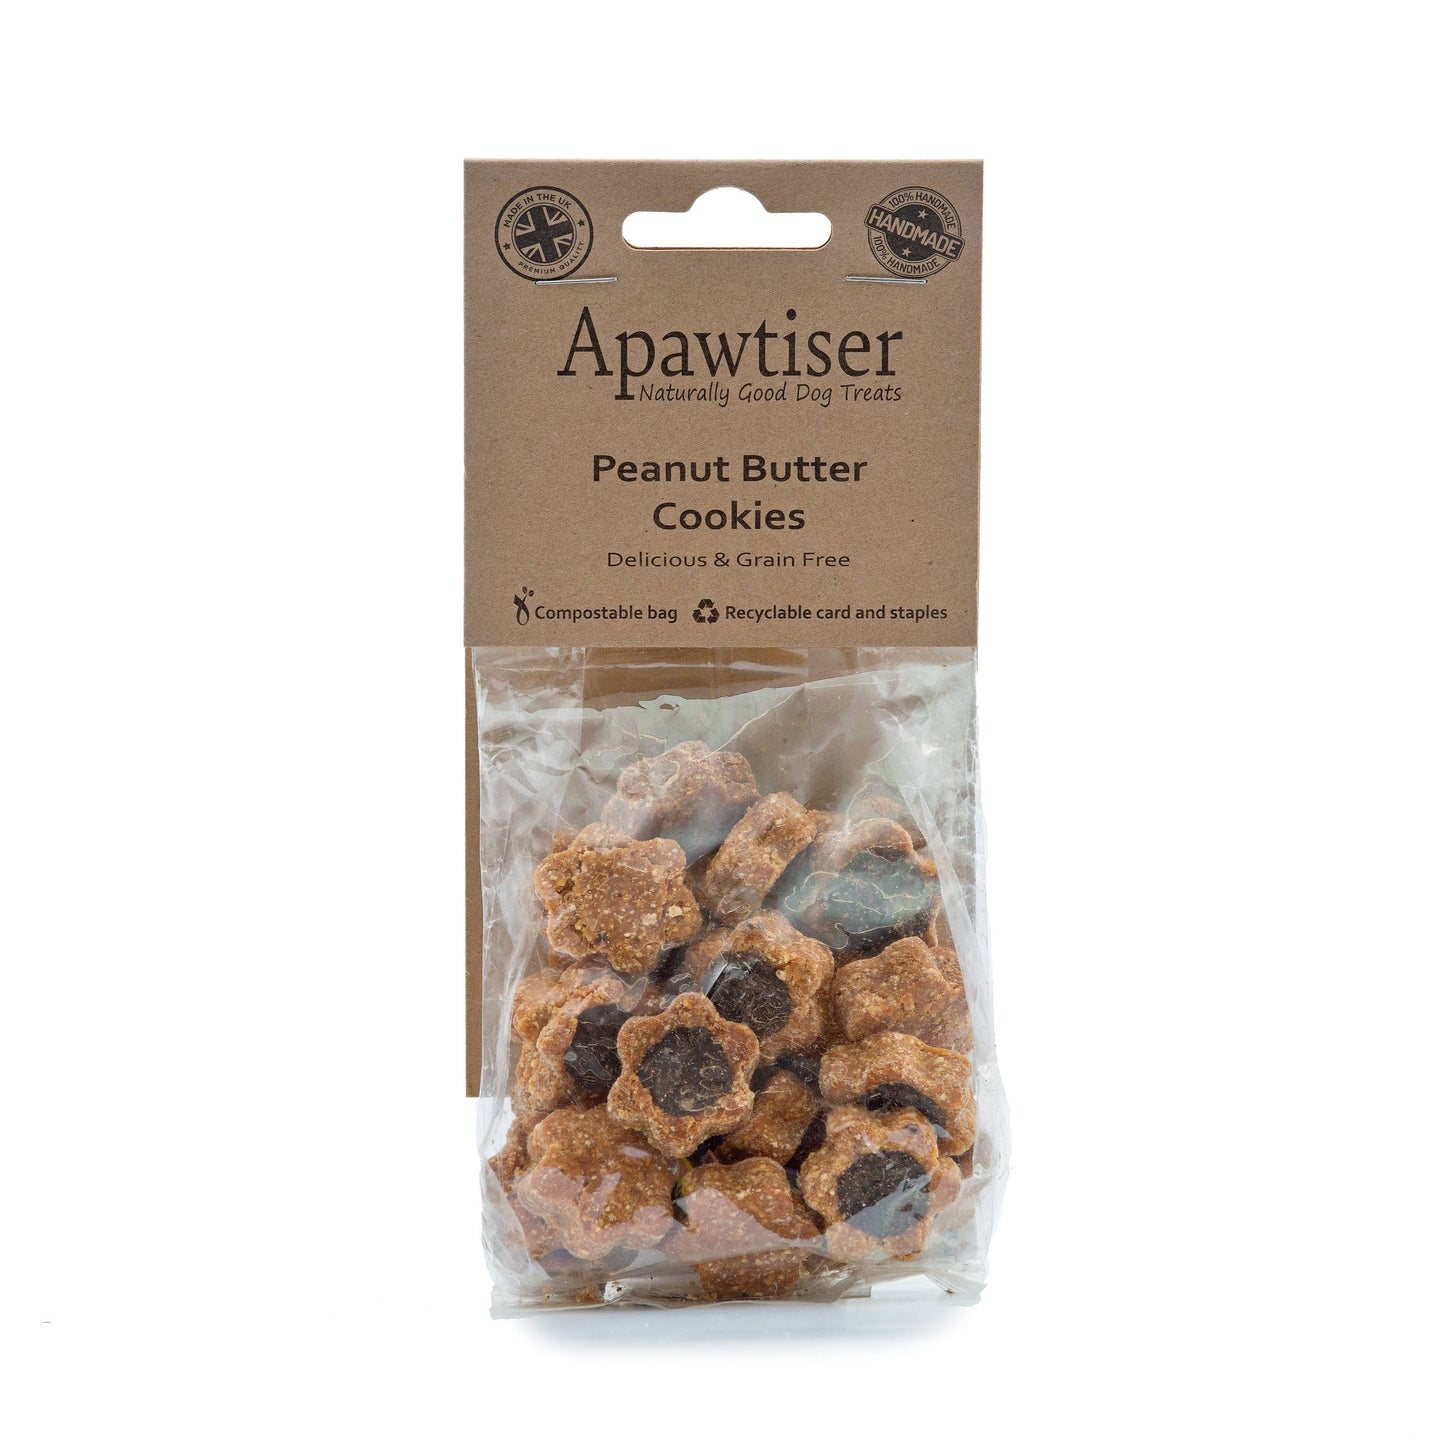 Apawtiser Peanut Butter Cookies 100g - Dog Treats